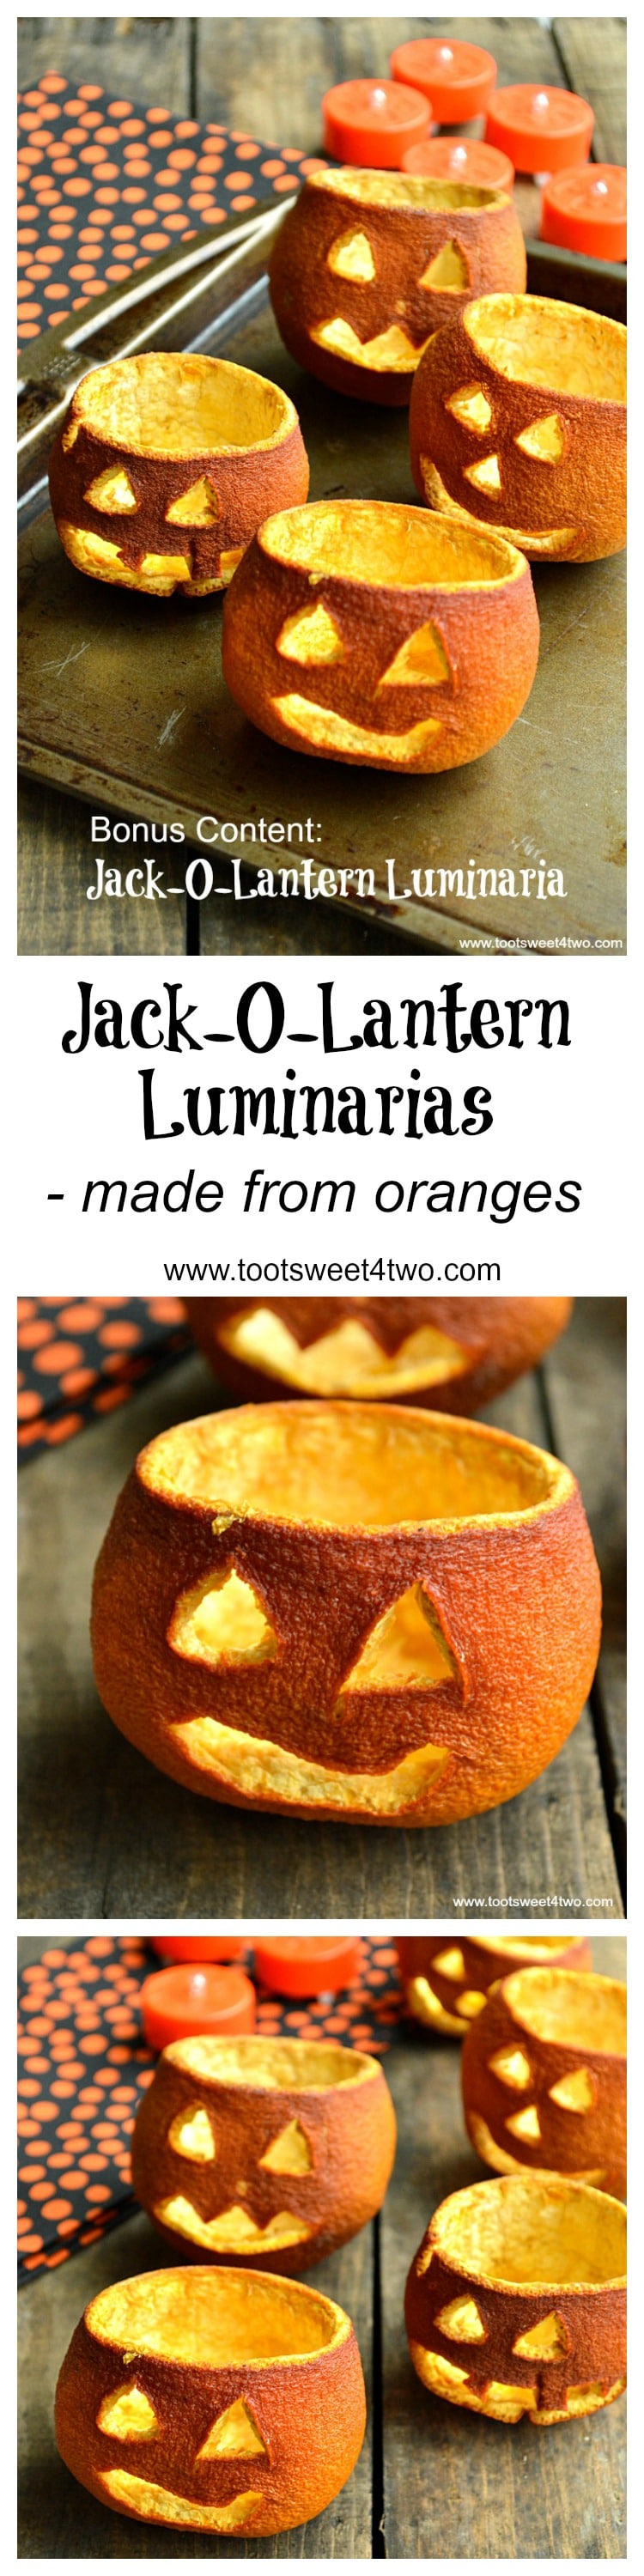 Jack-O-Lantern Luminarias Pinterest collage